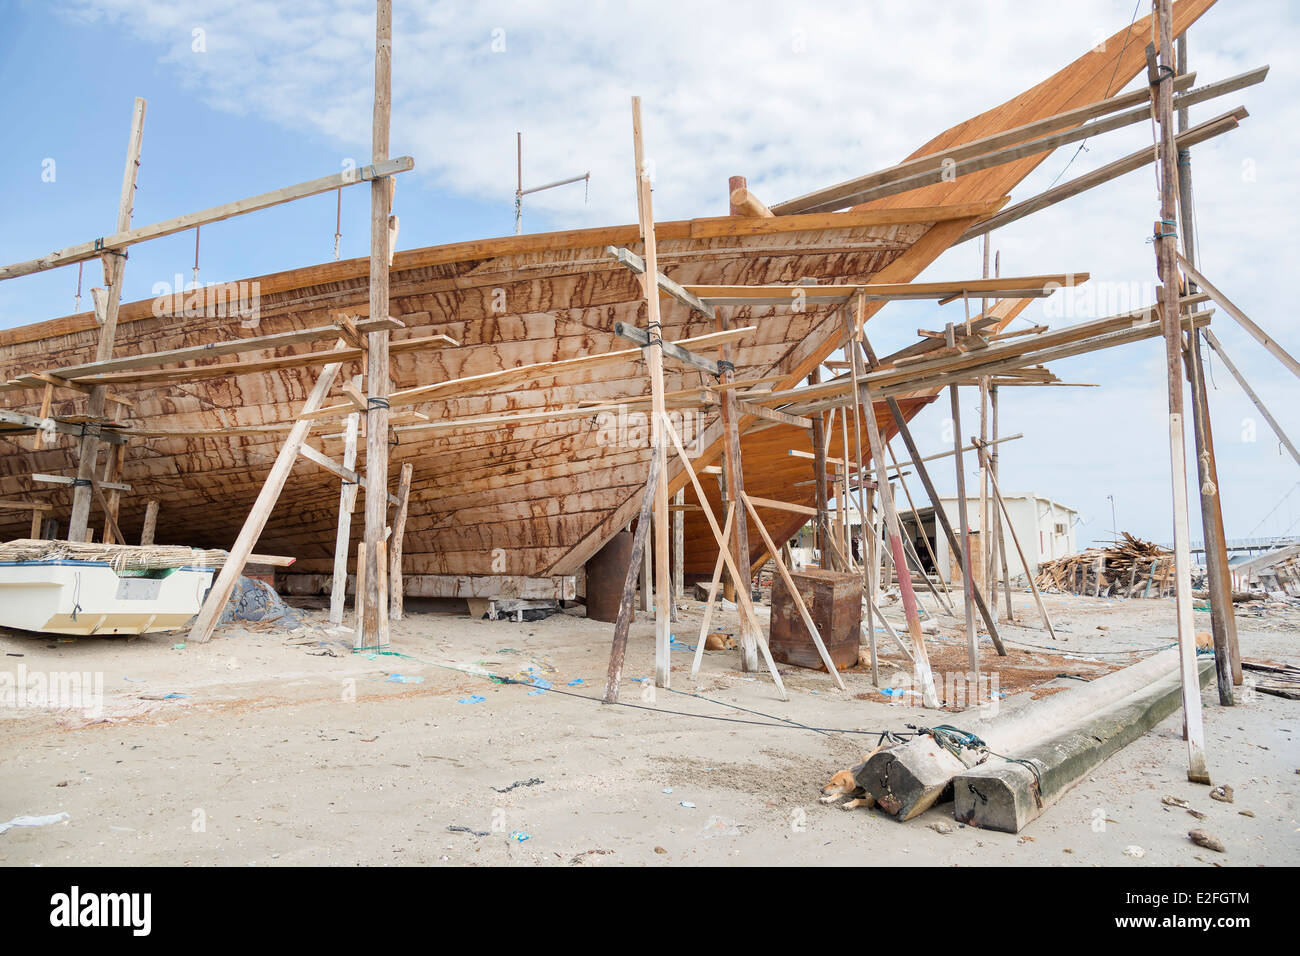 Lavorazioni artigianali tradizionali di costruzione navale Sur Oman Foto Stock